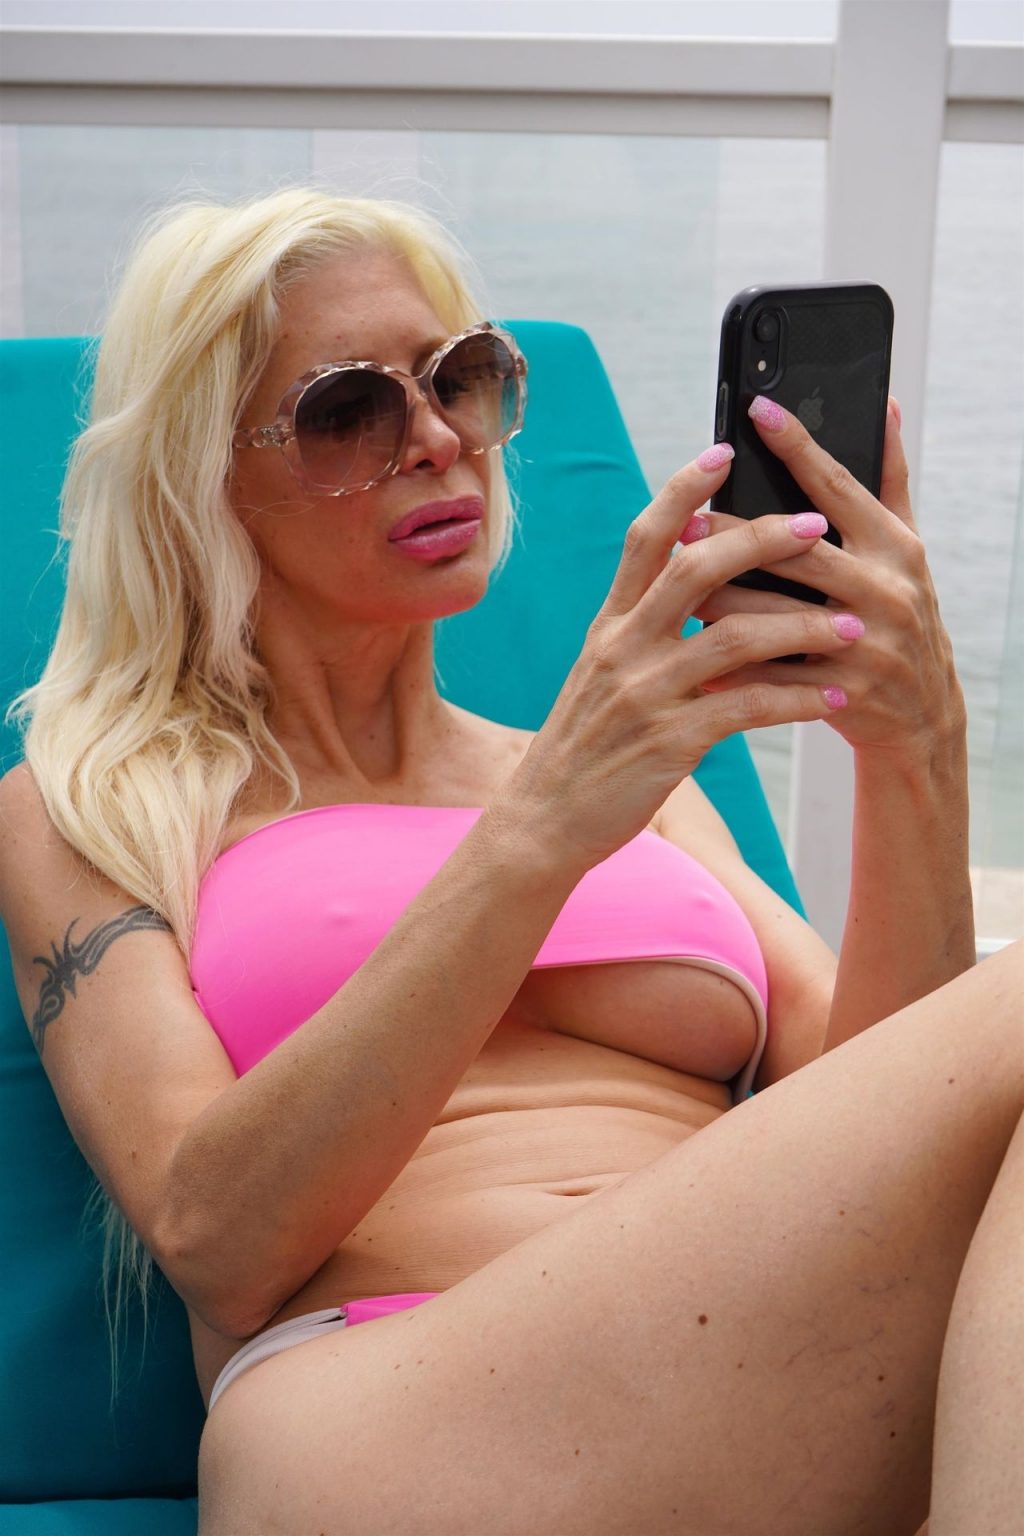 Angelique Morgan Gets Some Sun in a Pink Bikini (46 Photos)